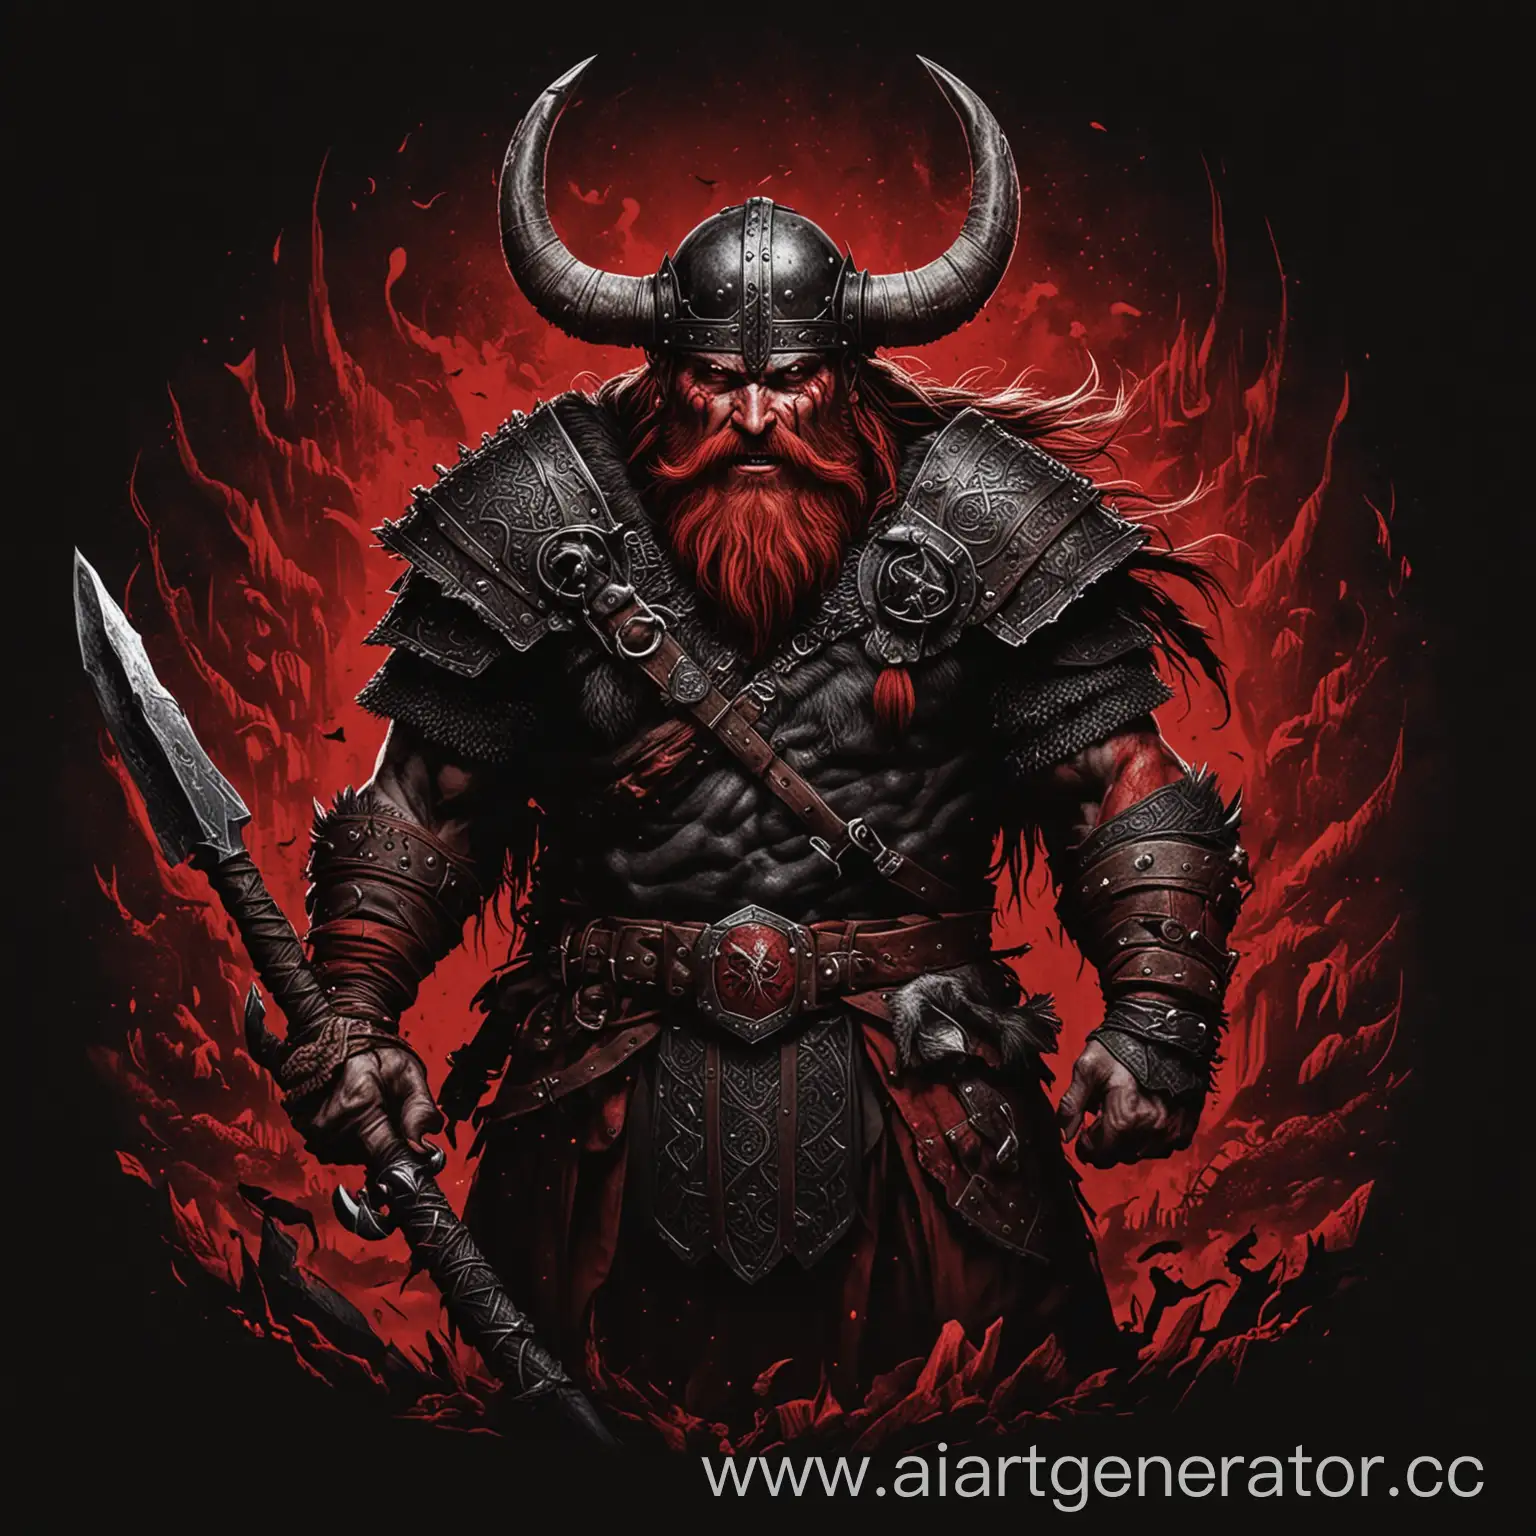 Terrifying-Viking-Warrior-on-Black-Red-Background-RPG-Style-Art